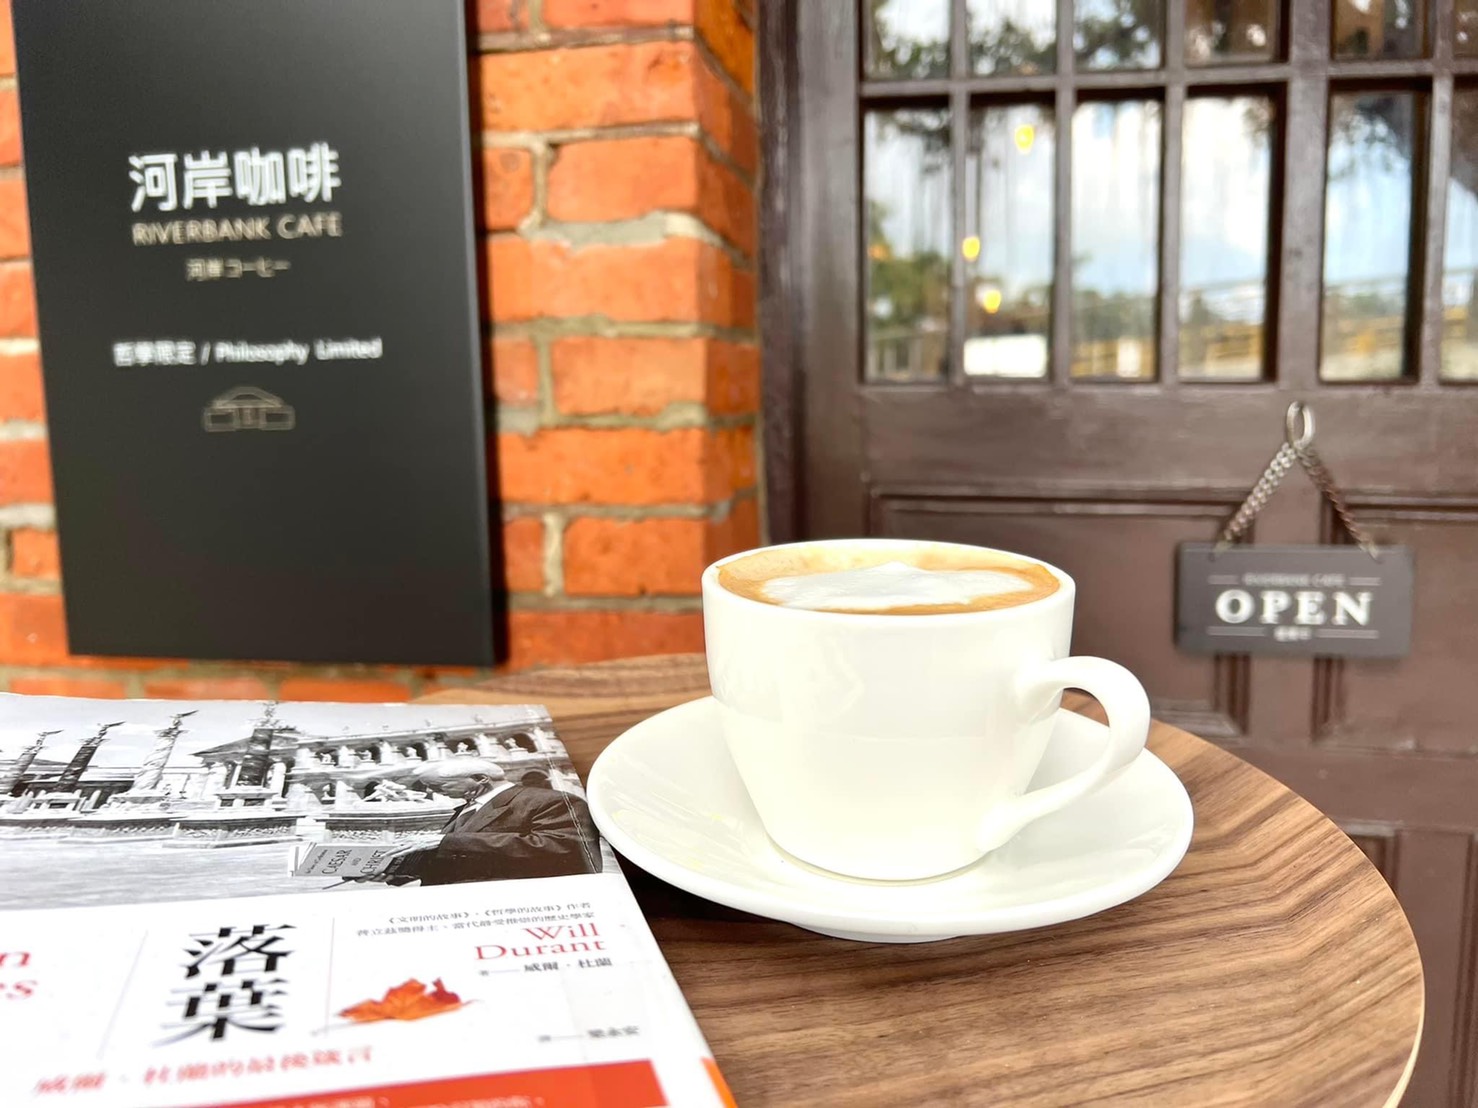 原臺南運河安平海關「河岸咖啡」開張!文化局自營 百年古蹟化身絕美獨立咖啡館